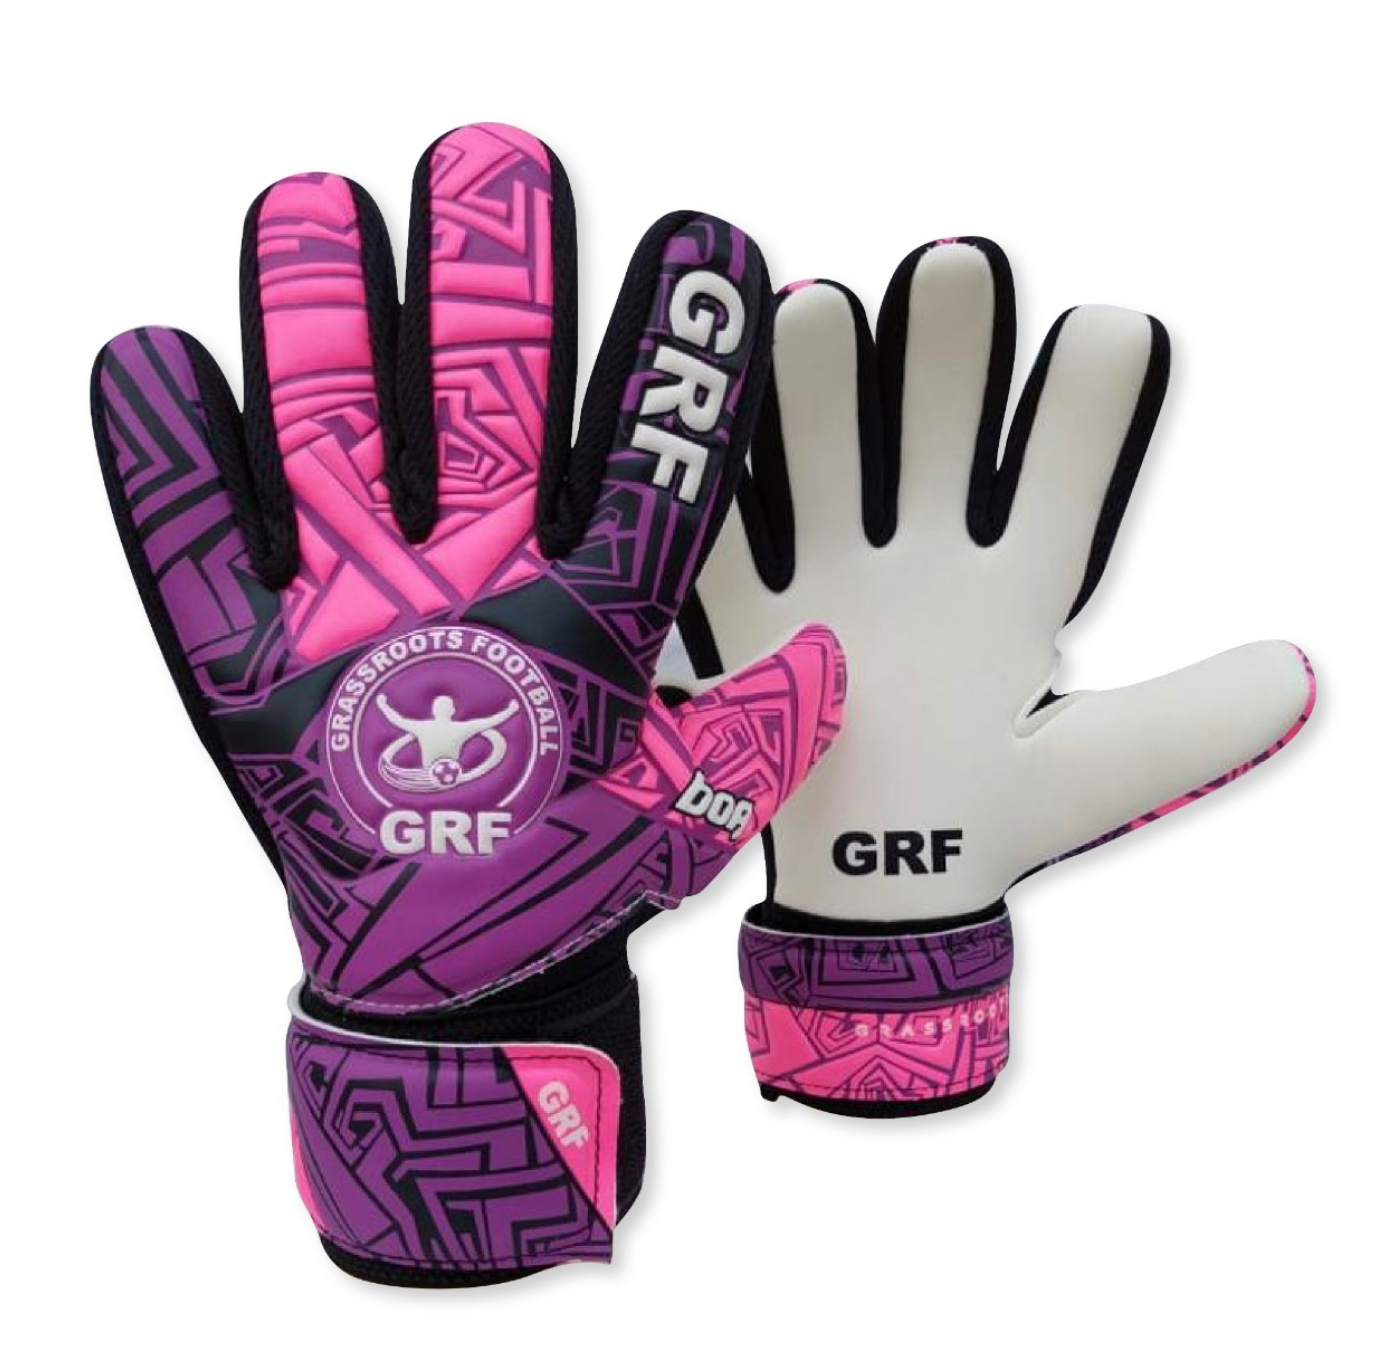 GRF Boa GK Gloves